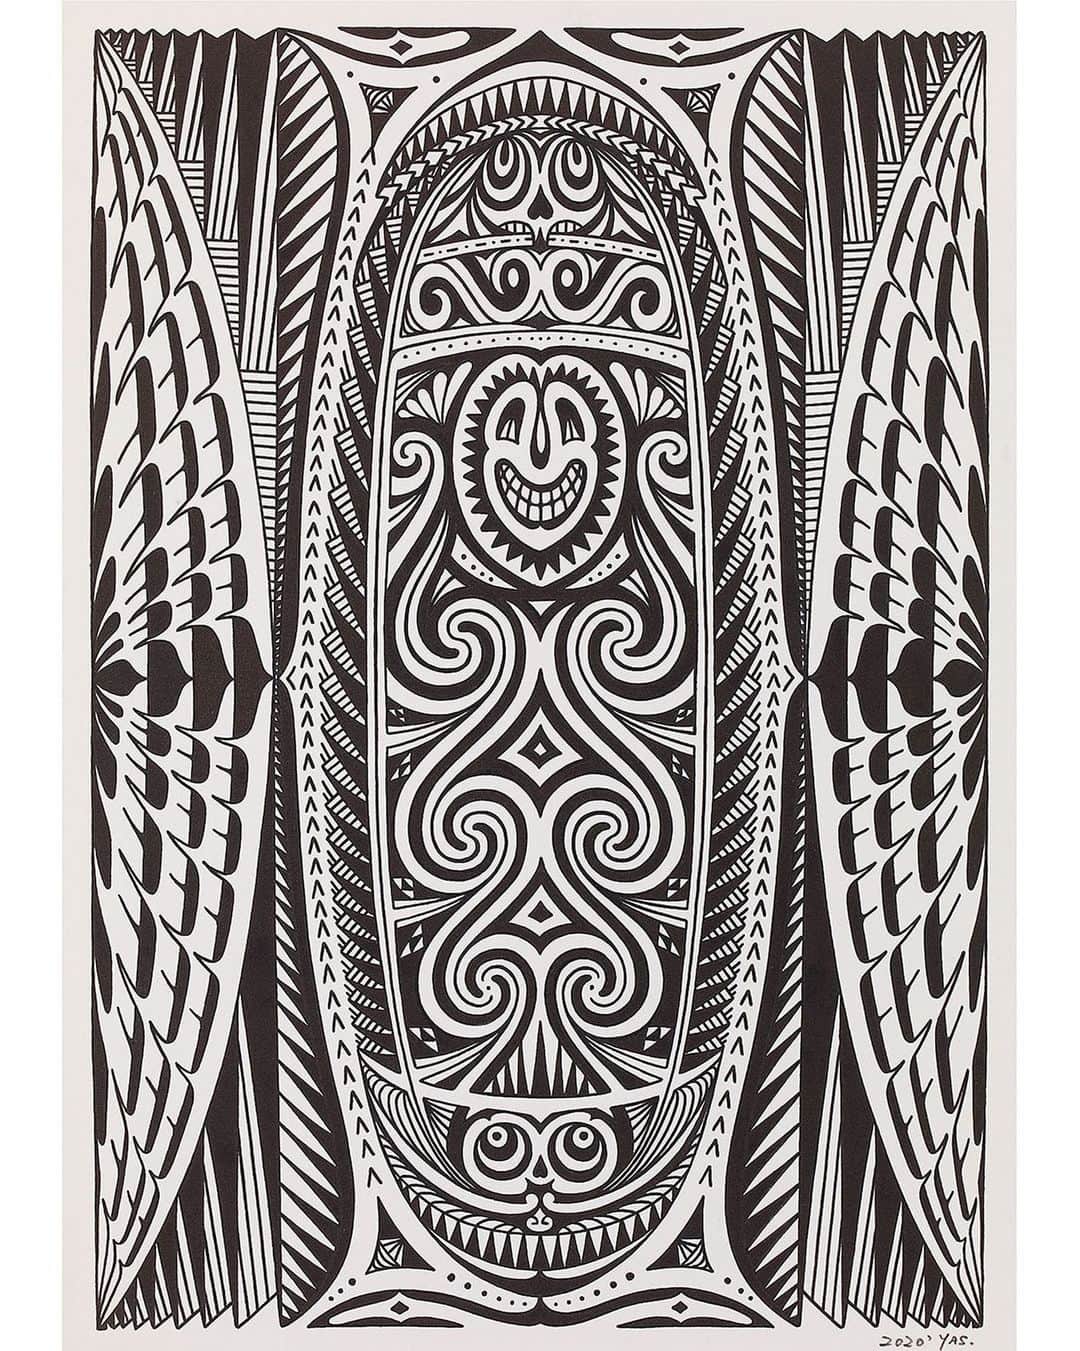 彫らずとも without needleのインスタグラム：「【ハウスタンバラン】 世界の秘境とされるニューギニア島には、土着の文化が根強く残っている。【ハウスタンバラン】と は、精霊信仰、プリミティブアートなどを通じ、独自の生活様式を守るニューギニアの民族たちの間 で“spirit house”を意味するもので、そこには様々な精霊が宿るとされている。今作は、現代美 術にも通じる幻想的な原始造形を YAS 氏ならではの解釈で再構築したもので、170 人ものタトゥー アーティストが参加し、世界で 1000 部のみ販売されるエクスクルーシブな作品集『SHANGRILA INMORTAL TATTOOING』にも掲載。また、2021 年に開催予定の「ロンドン・タトゥー・コンベンショ ン」で、今作の原画がオークションに。YAS 氏の世界的な活躍を裏付ける渾身作といえる。Original Painting  #withoutneedle #彫らずとも  #kinarimagazine #supremerulerofsound #srs #tattoo #freehand #freehandtattoo #tribe #tribal #tribaltattoo #blackink #blackwork #sendaitattoo #thigh #thightattoo #innerthigh #innerthightattoo  #トライバル #トライバルタトゥー #スプリームルーラーオブサウンド #仙台タトゥー  #yapetas」